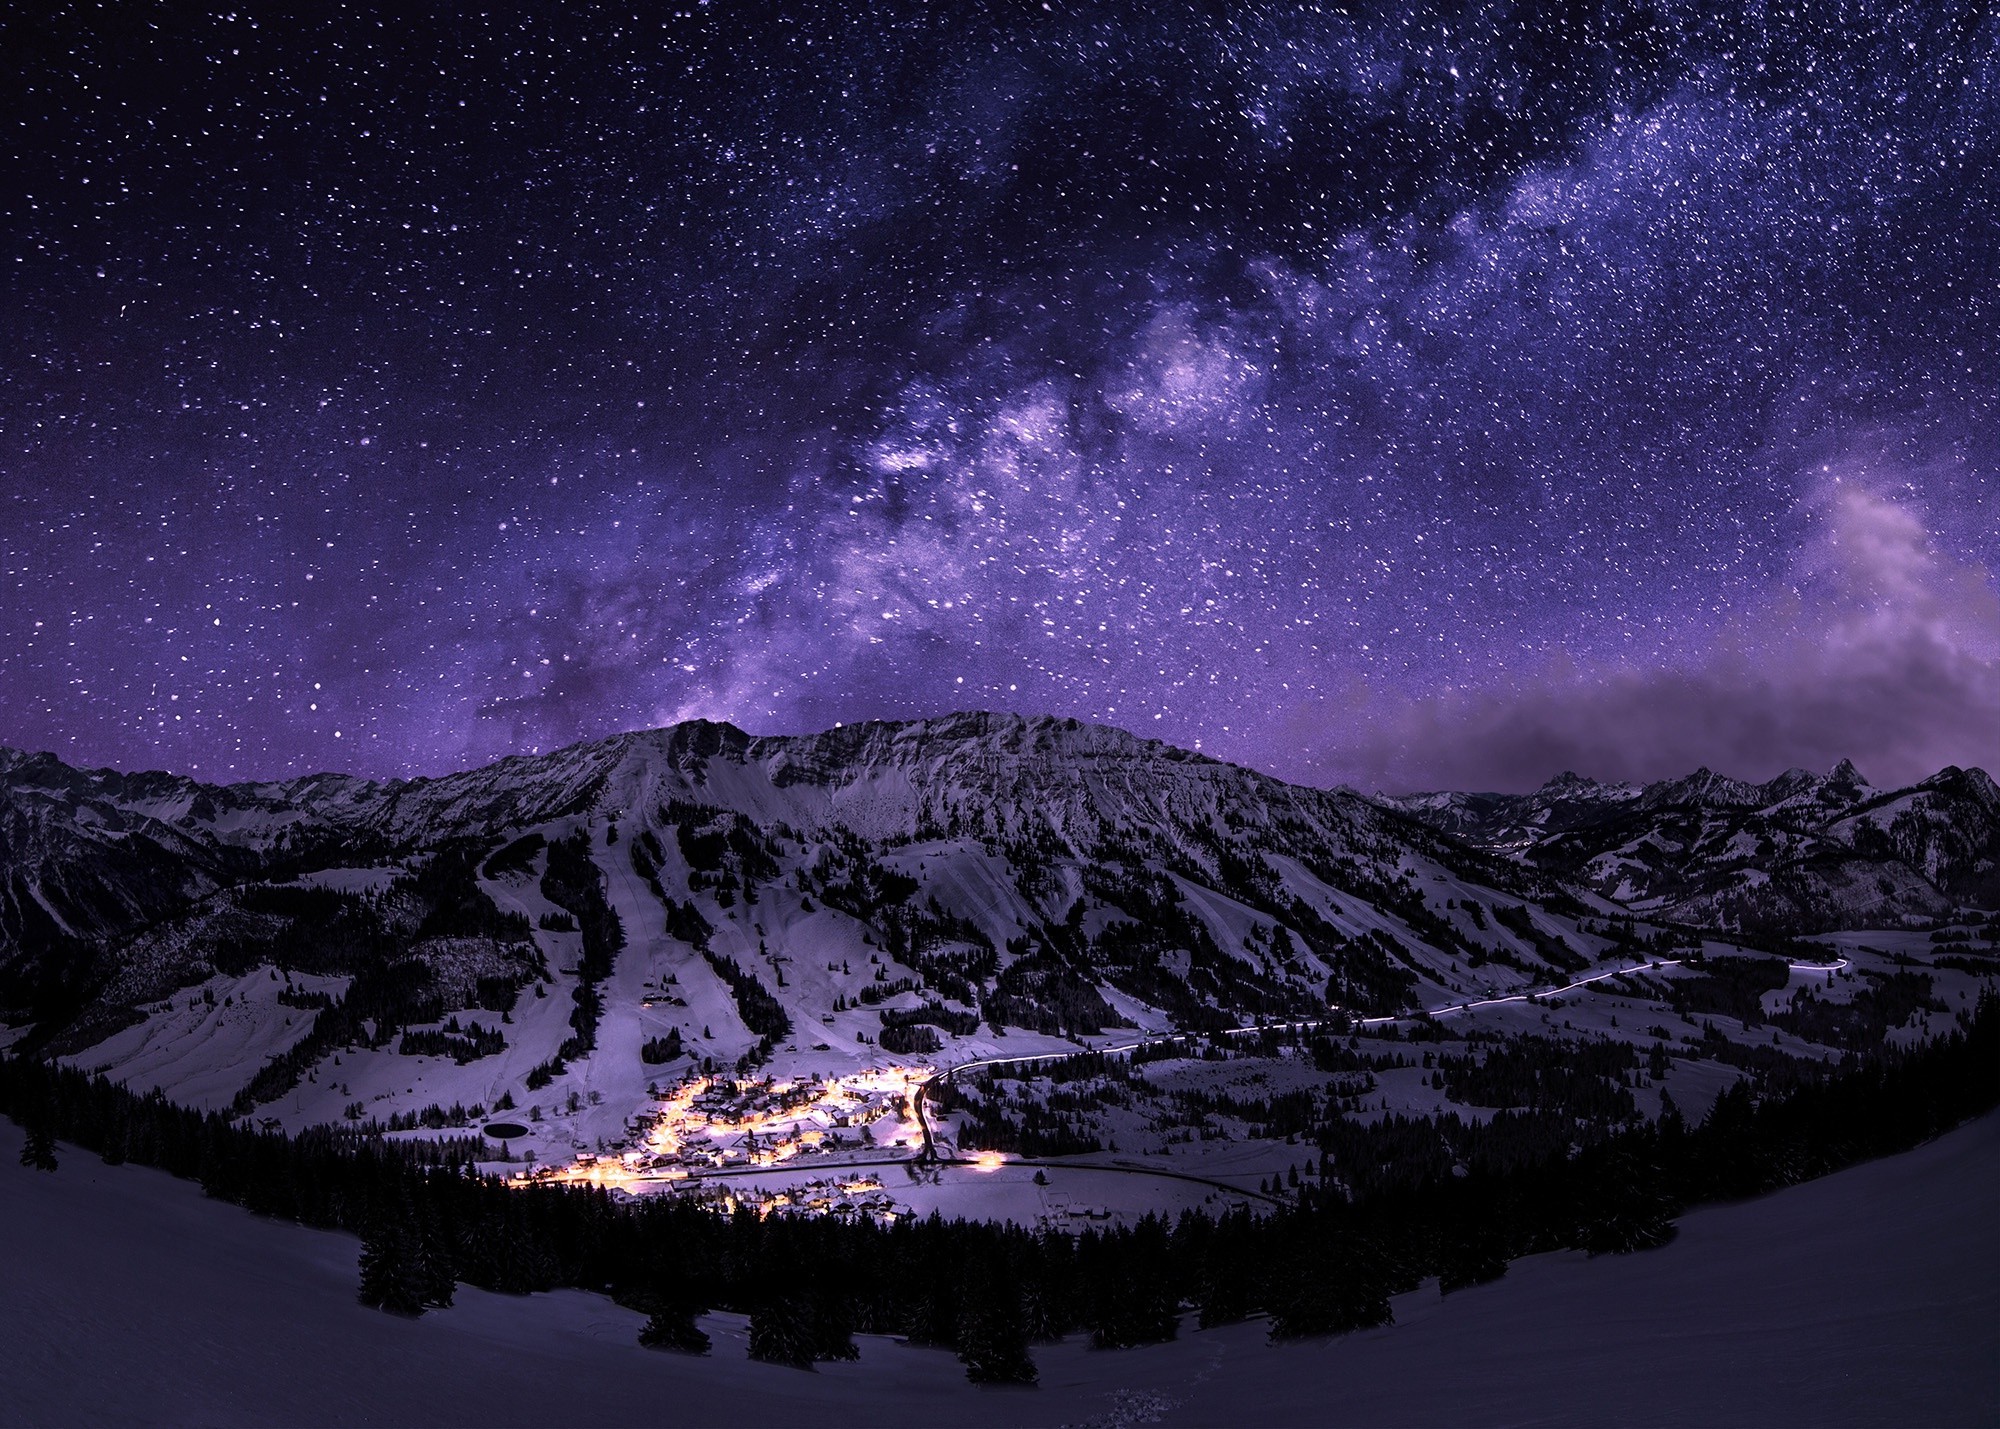 Cảnh tuyết đêm, núi và sao lấp lánh sẽ khiến bạn đắm say trong cảm giác mộng mị và thăng hoa. Không gian huyền bí và ấn tượng này sẽ mang đến cho bạn những trải nghiệm tuyệt vời và khó quên.